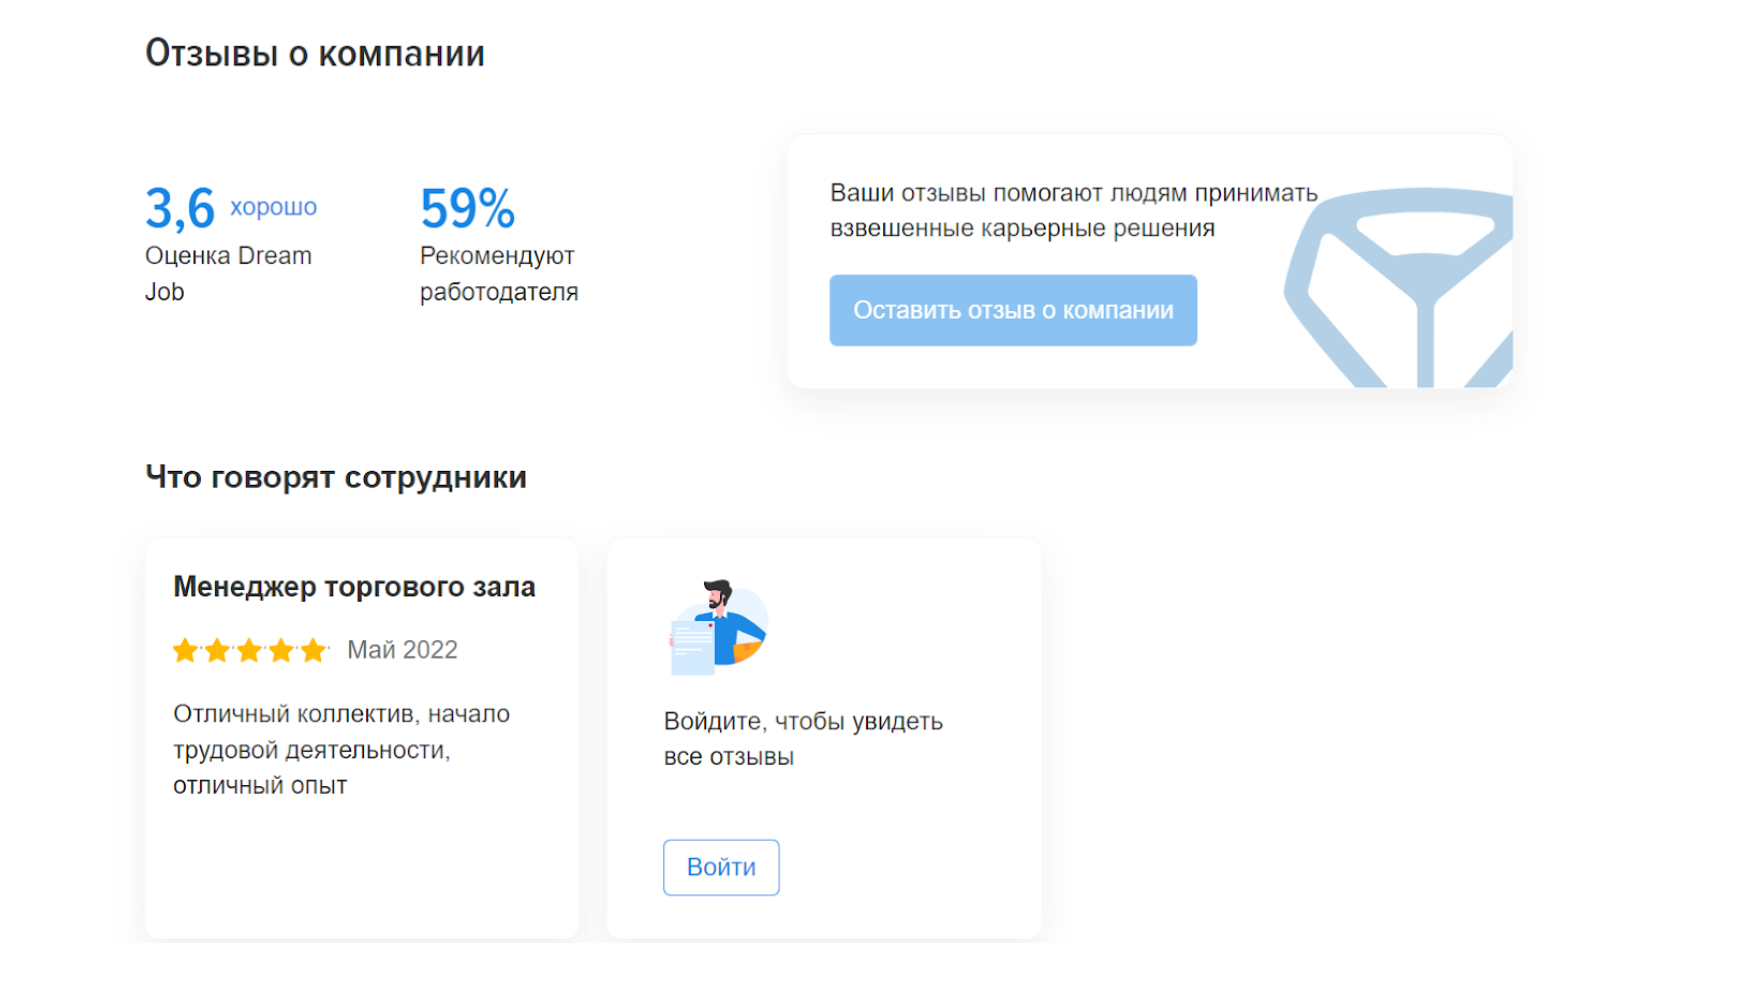 Яндекс» остановил свой «Взгляд» на опросах, HeadHunter инвестирует в работу  мечты, Минцифры подготовил новые штрафы, «Озону» не расплатиться — ADPASS